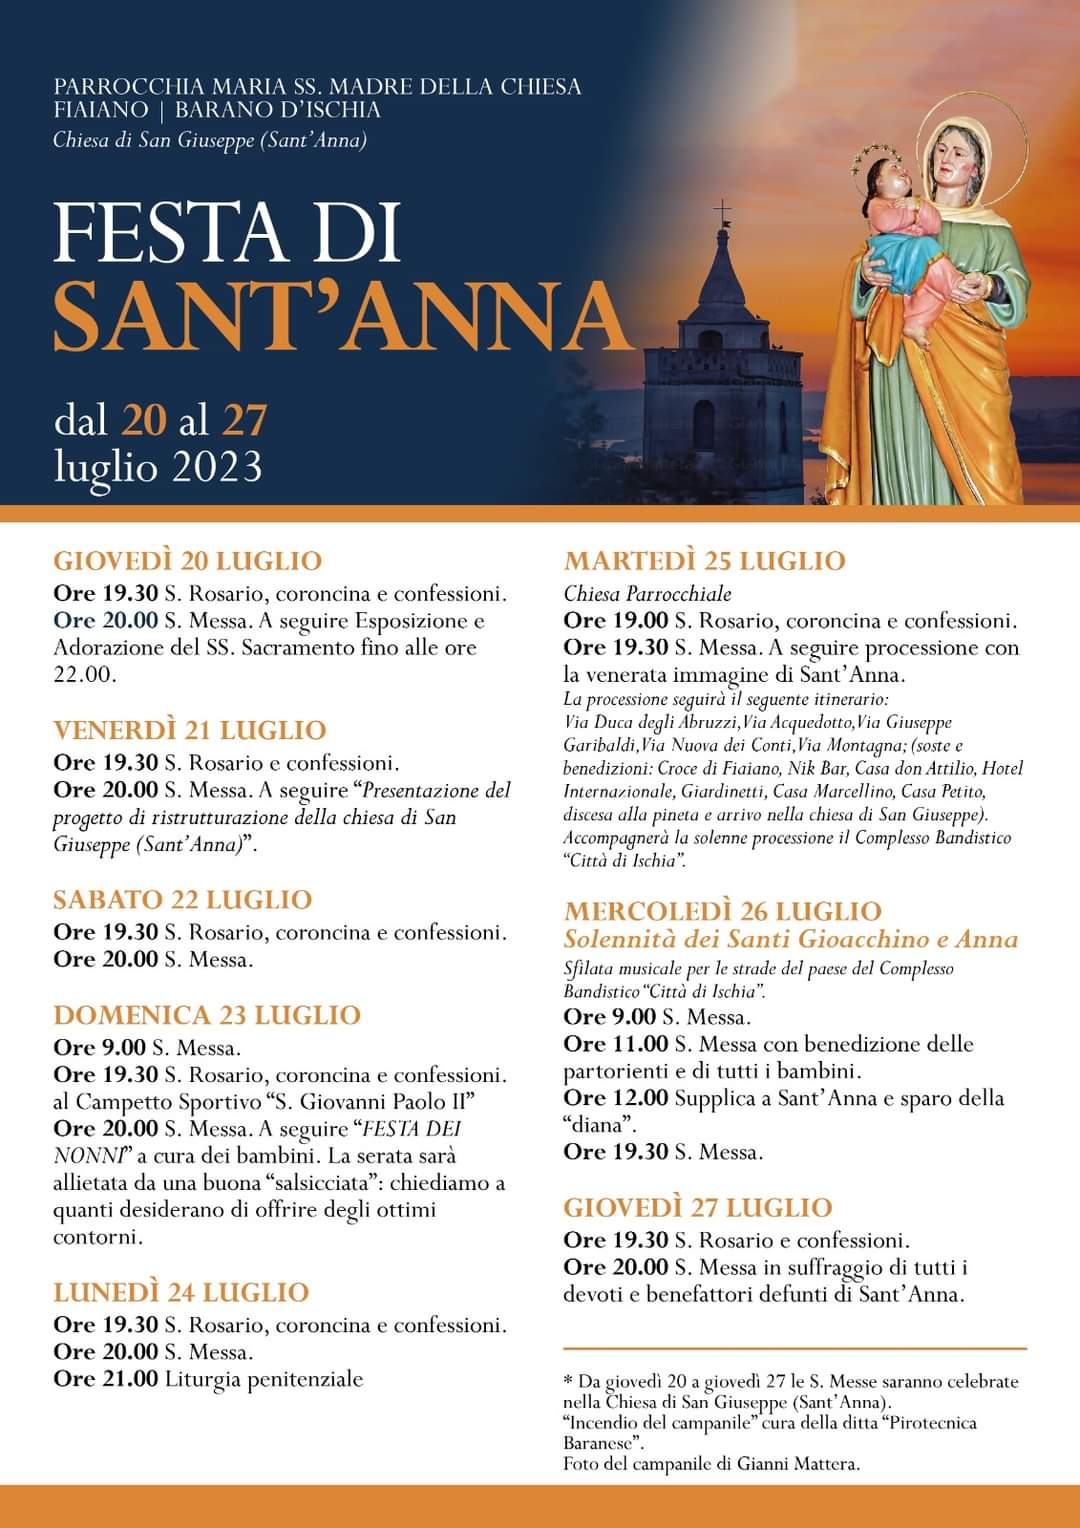 Festa di Sant'Anna: “Presentazione del progetto di ristrutturazione della chiesa di San Giuseppe (Sant’Anna)”